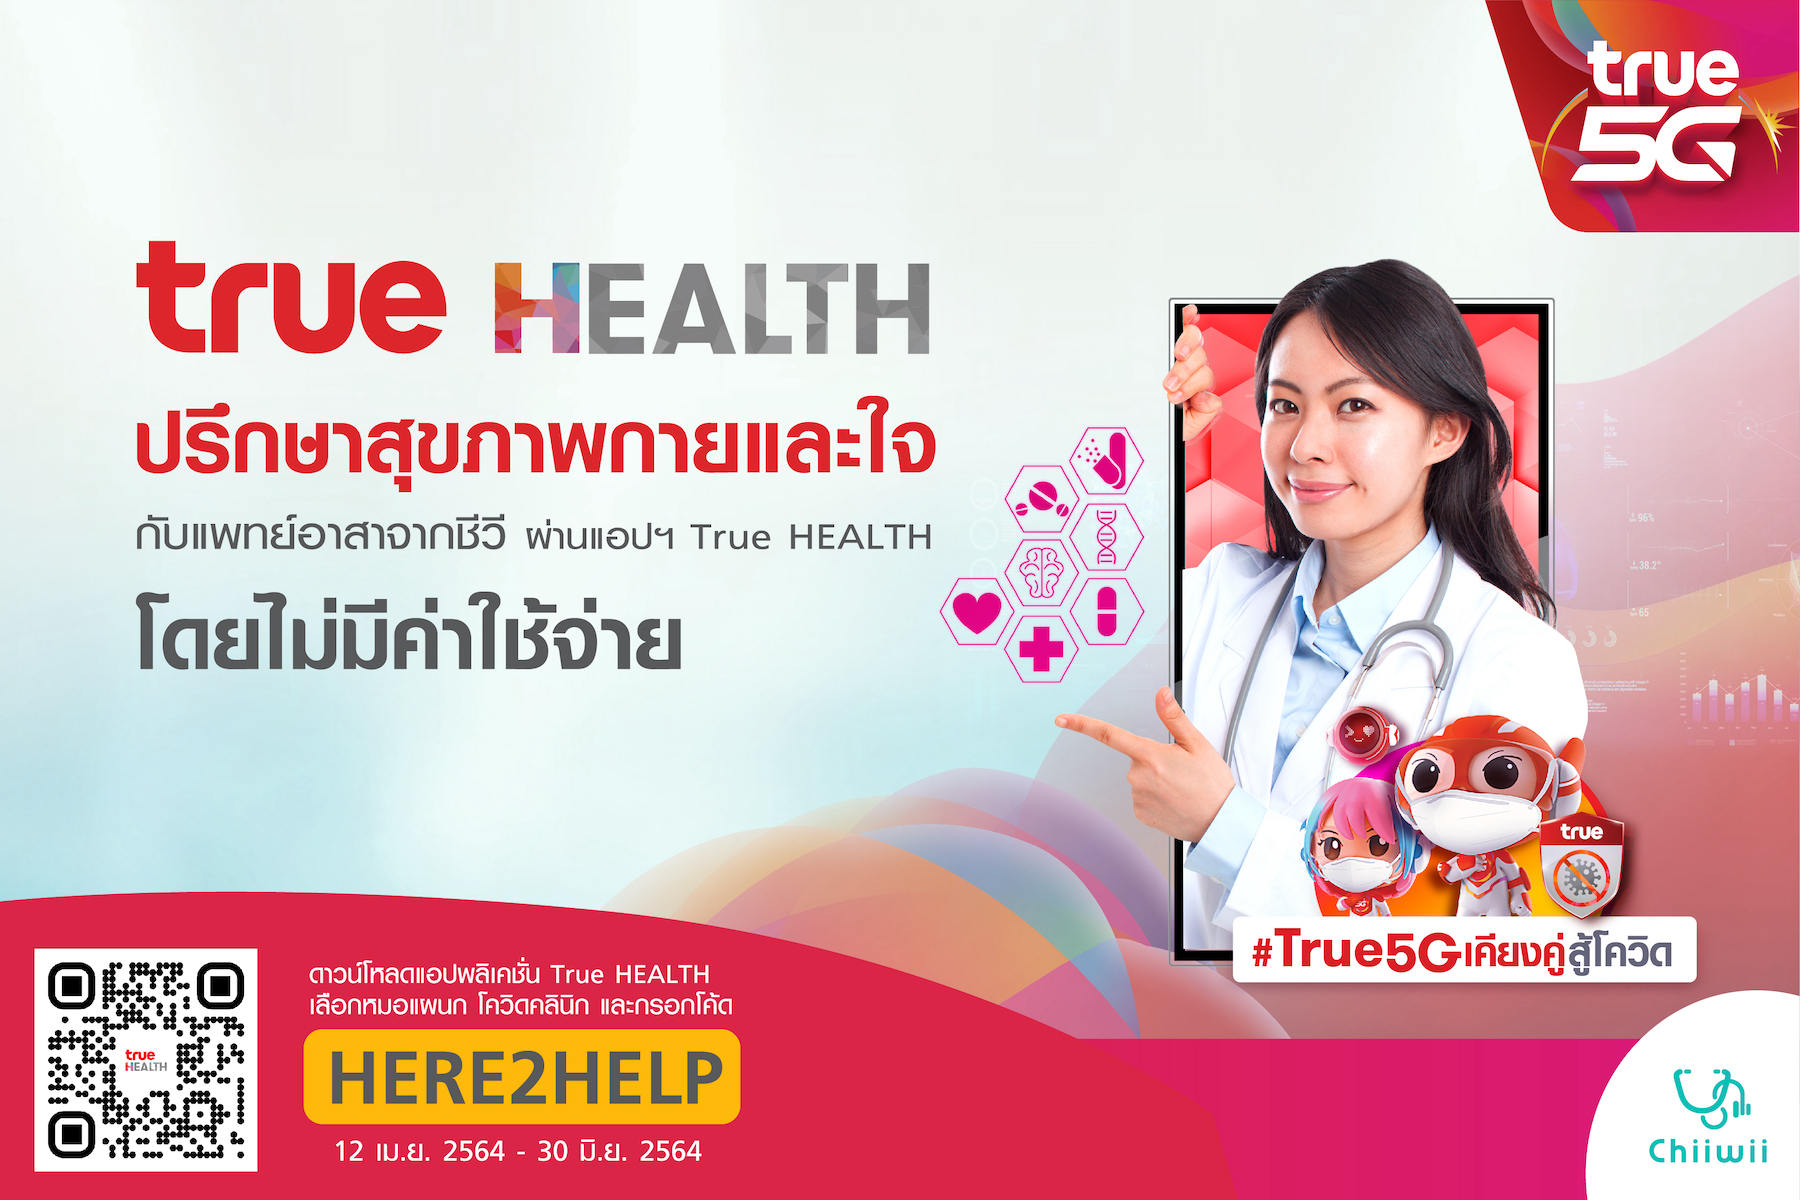 ปรึกษาเรื่องสุขภาพเบื้องต้นกับแพทย์ ผ่านแอป True HEALTH เคียงคู่คนไทย ร่วมฝ่าวิกฤตโควิด-19